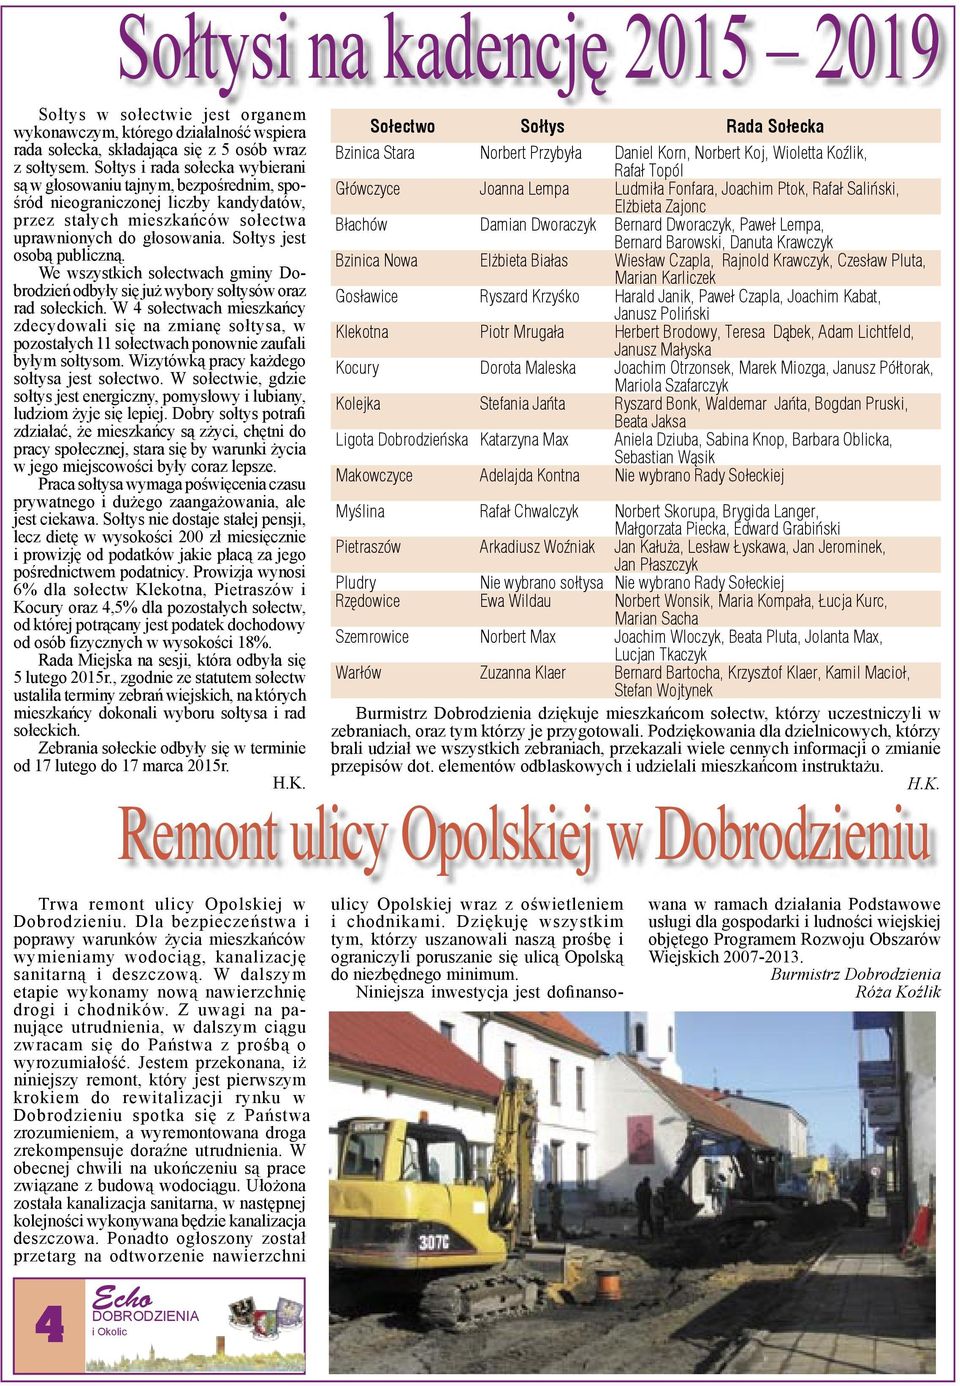 Sołtys jest osobą publiczną. We wszystkich sołectwach gminy Dobrodzień odbyły się już wybory sołtysów oraz rad sołeckich.